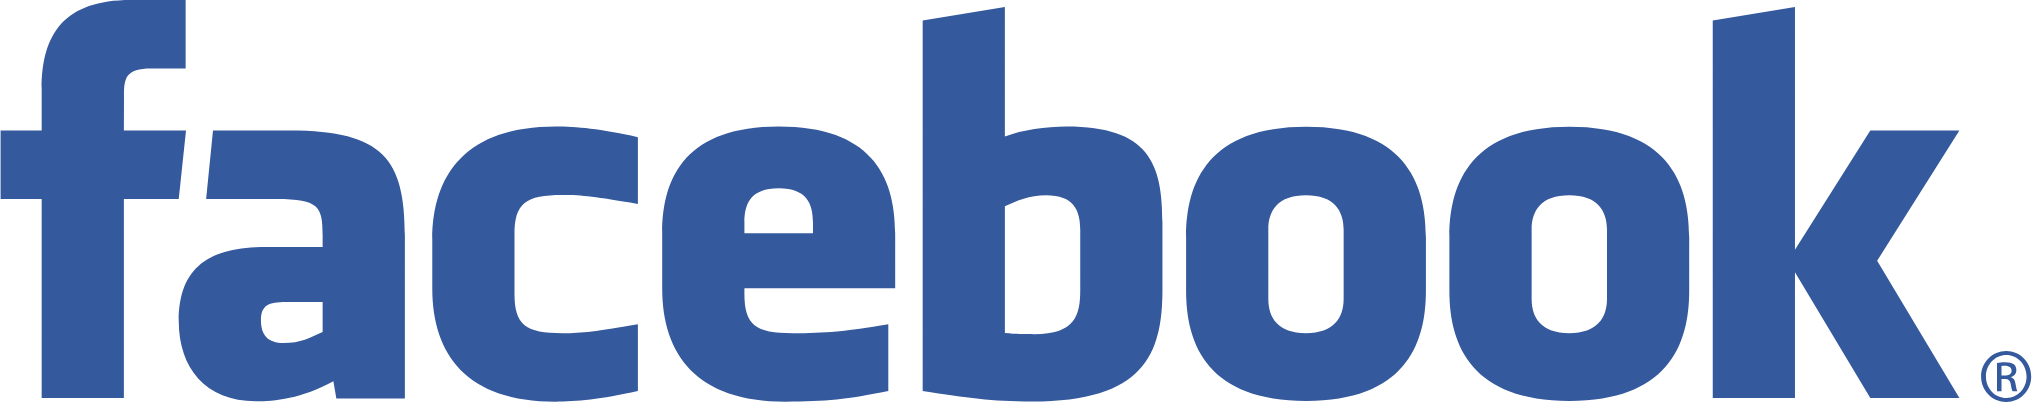 facebook-name-logo